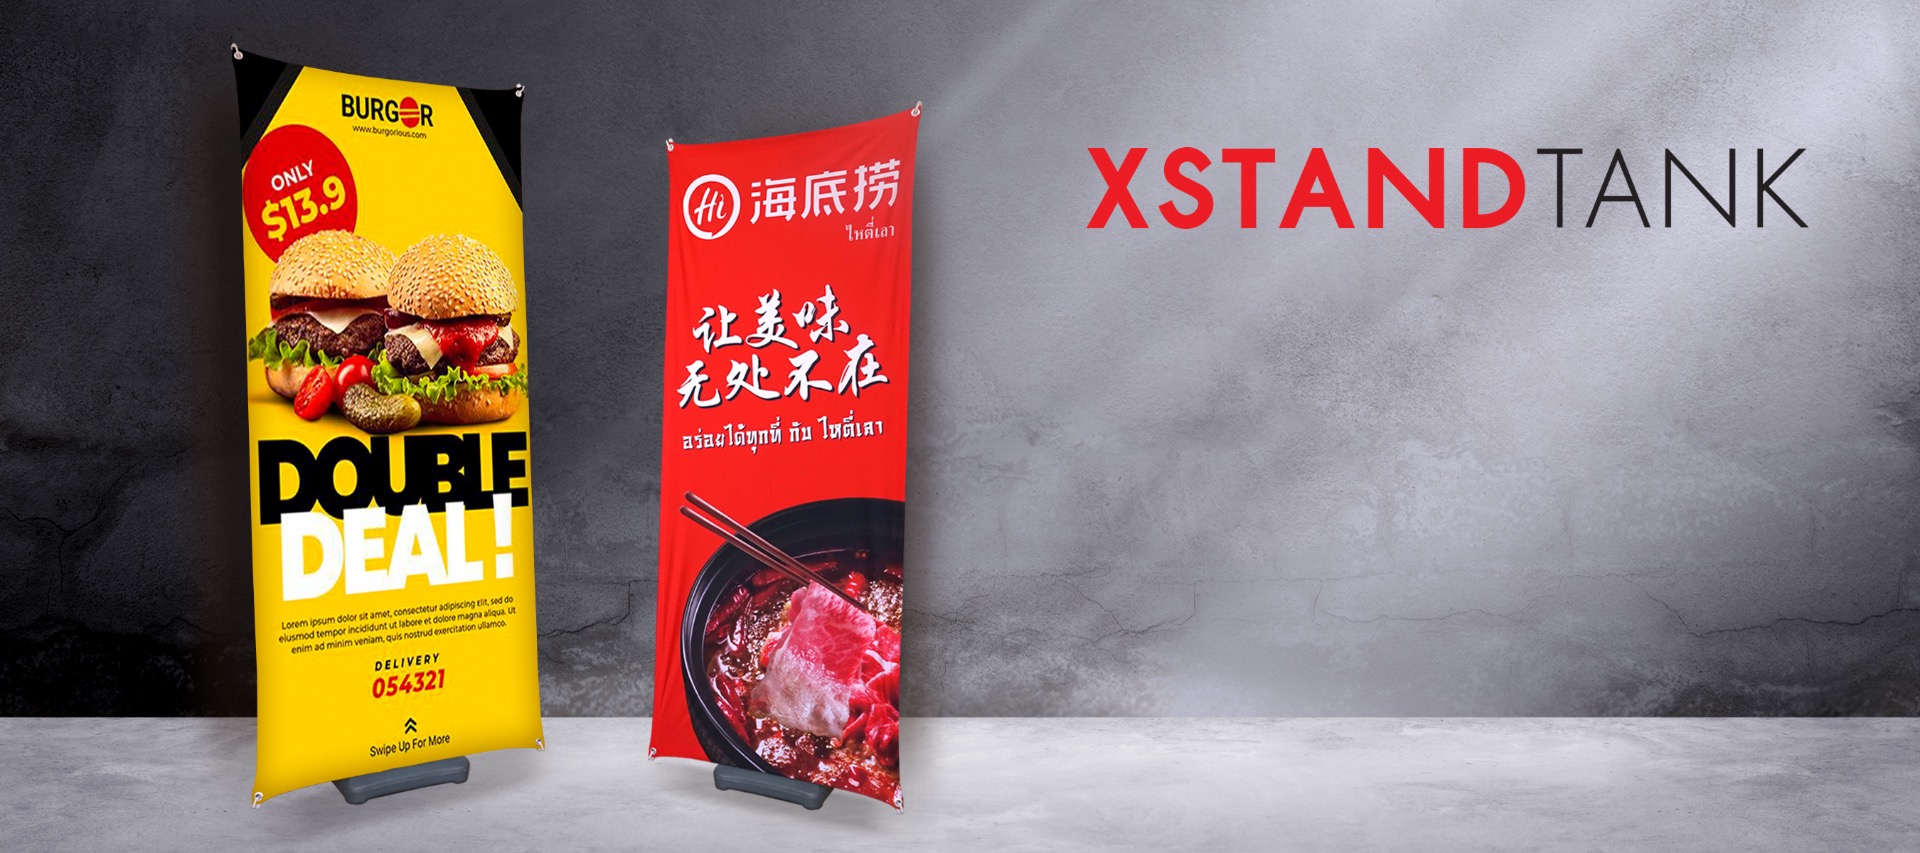 Xstandtank-banner